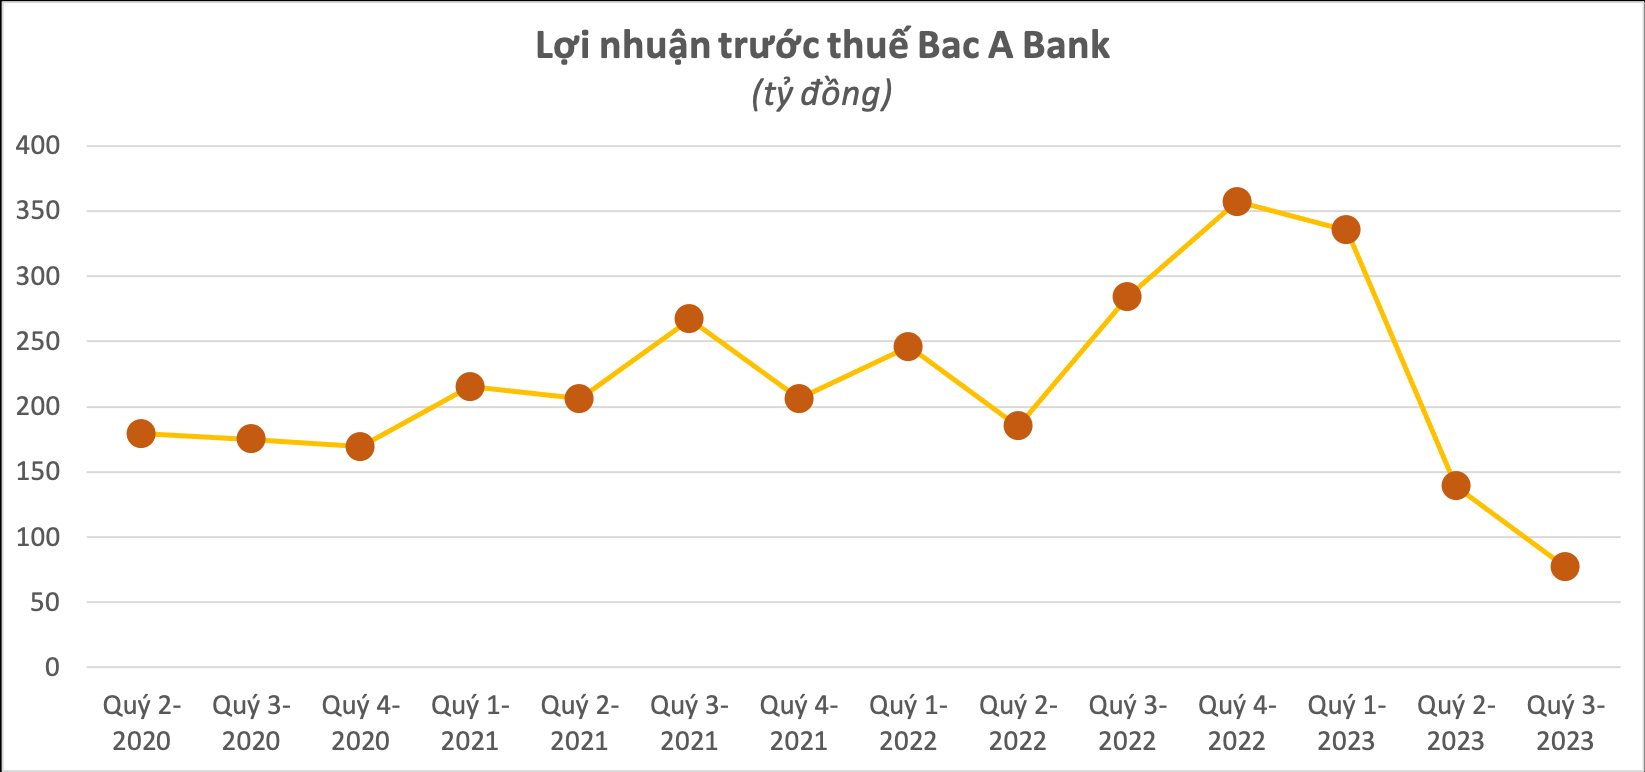 Cập nhật BCTC ngân hàng sáng 18/10: Đã có 3 ngân hàng công bố kết quả kinh doanh quý 3/2023, lợi nhuận đều sụt giảm - Ảnh 2.